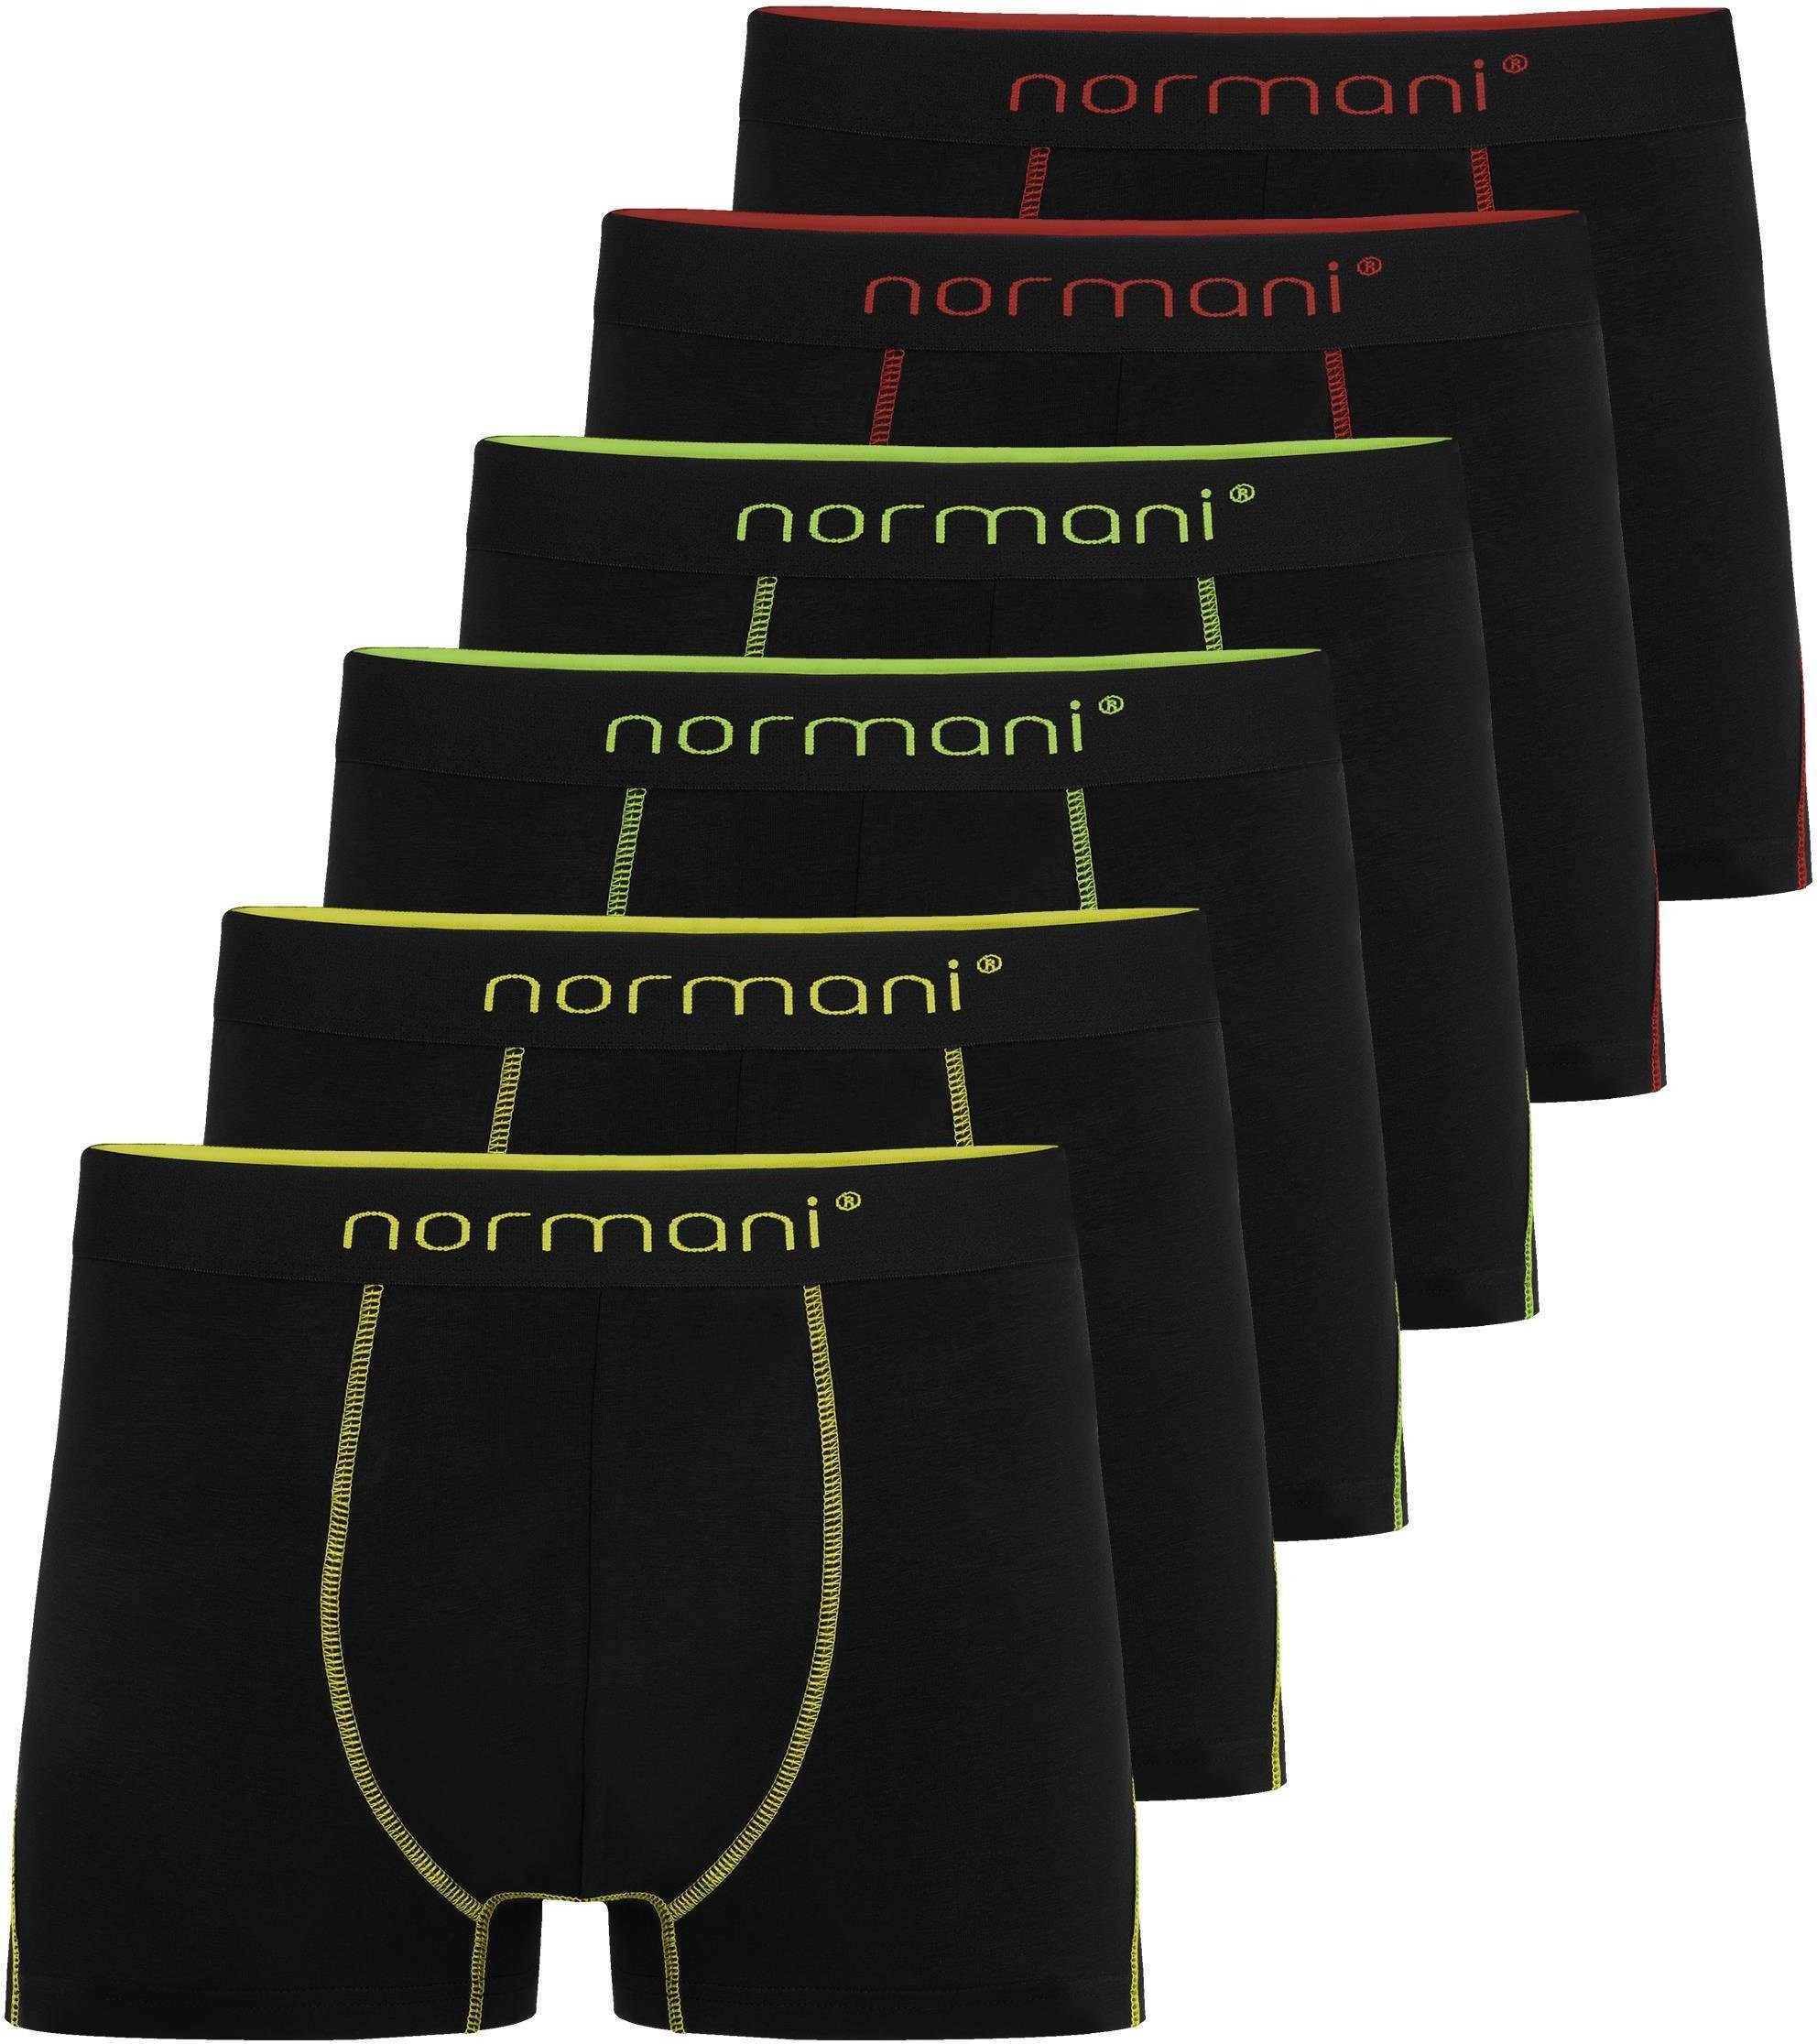 6 normani Gelb/Grün/Rot Männer Baumwolle Unterhose atmungsaktiver Herren aus Baumwoll-Boxershorts Boxershorts für